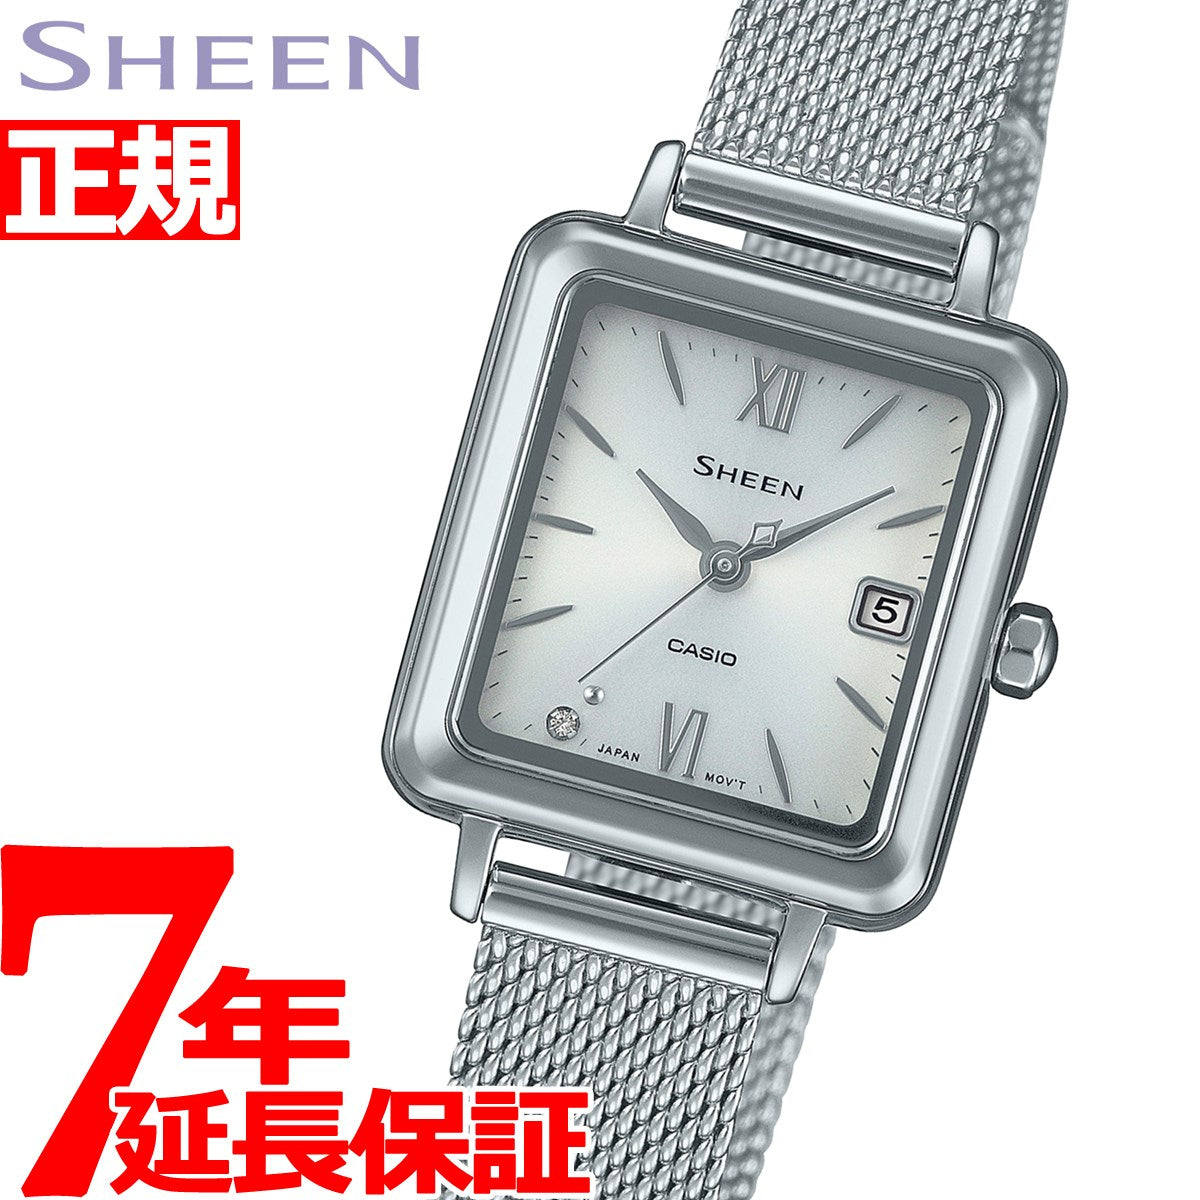 カシオ シーン CASIO SHEEN ソーラー 腕時計 レディース SHS-D400M